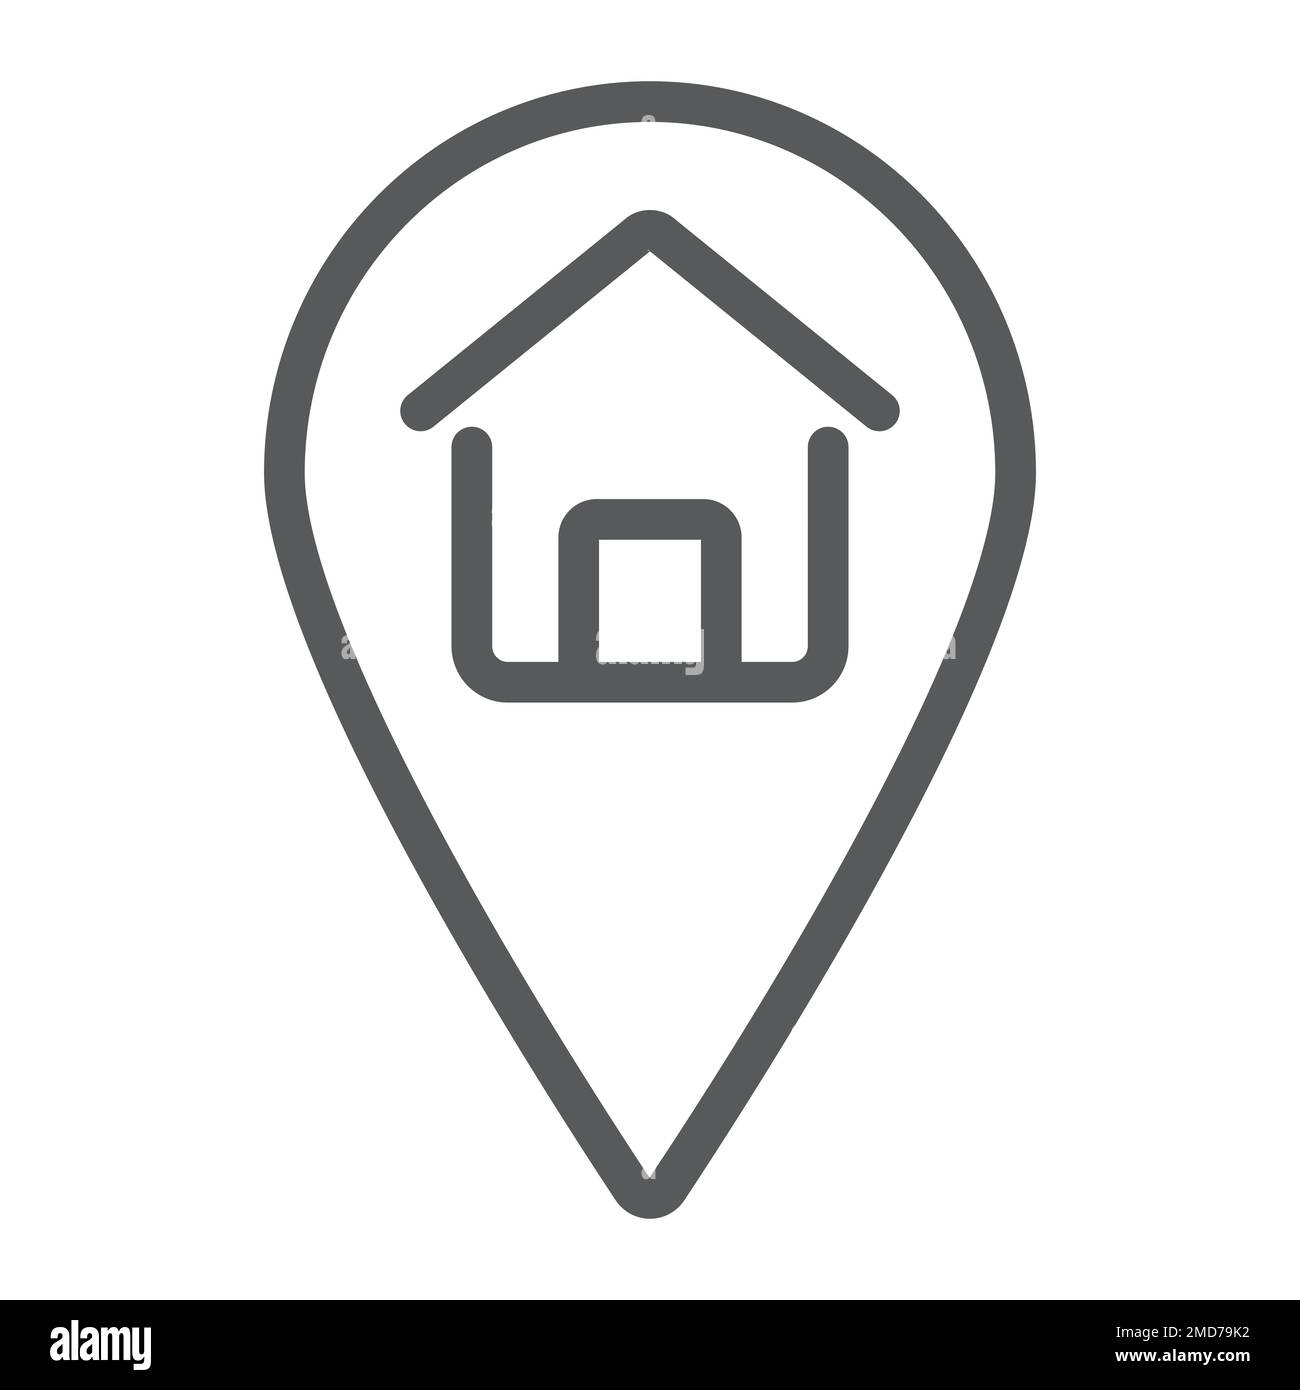 Liniensymbol für Wohnort, Immobilien und Wohnort, Pointer-Vektorgrafiken, lineares Muster auf weißem Hintergrund, eps 10. Stock Vektor